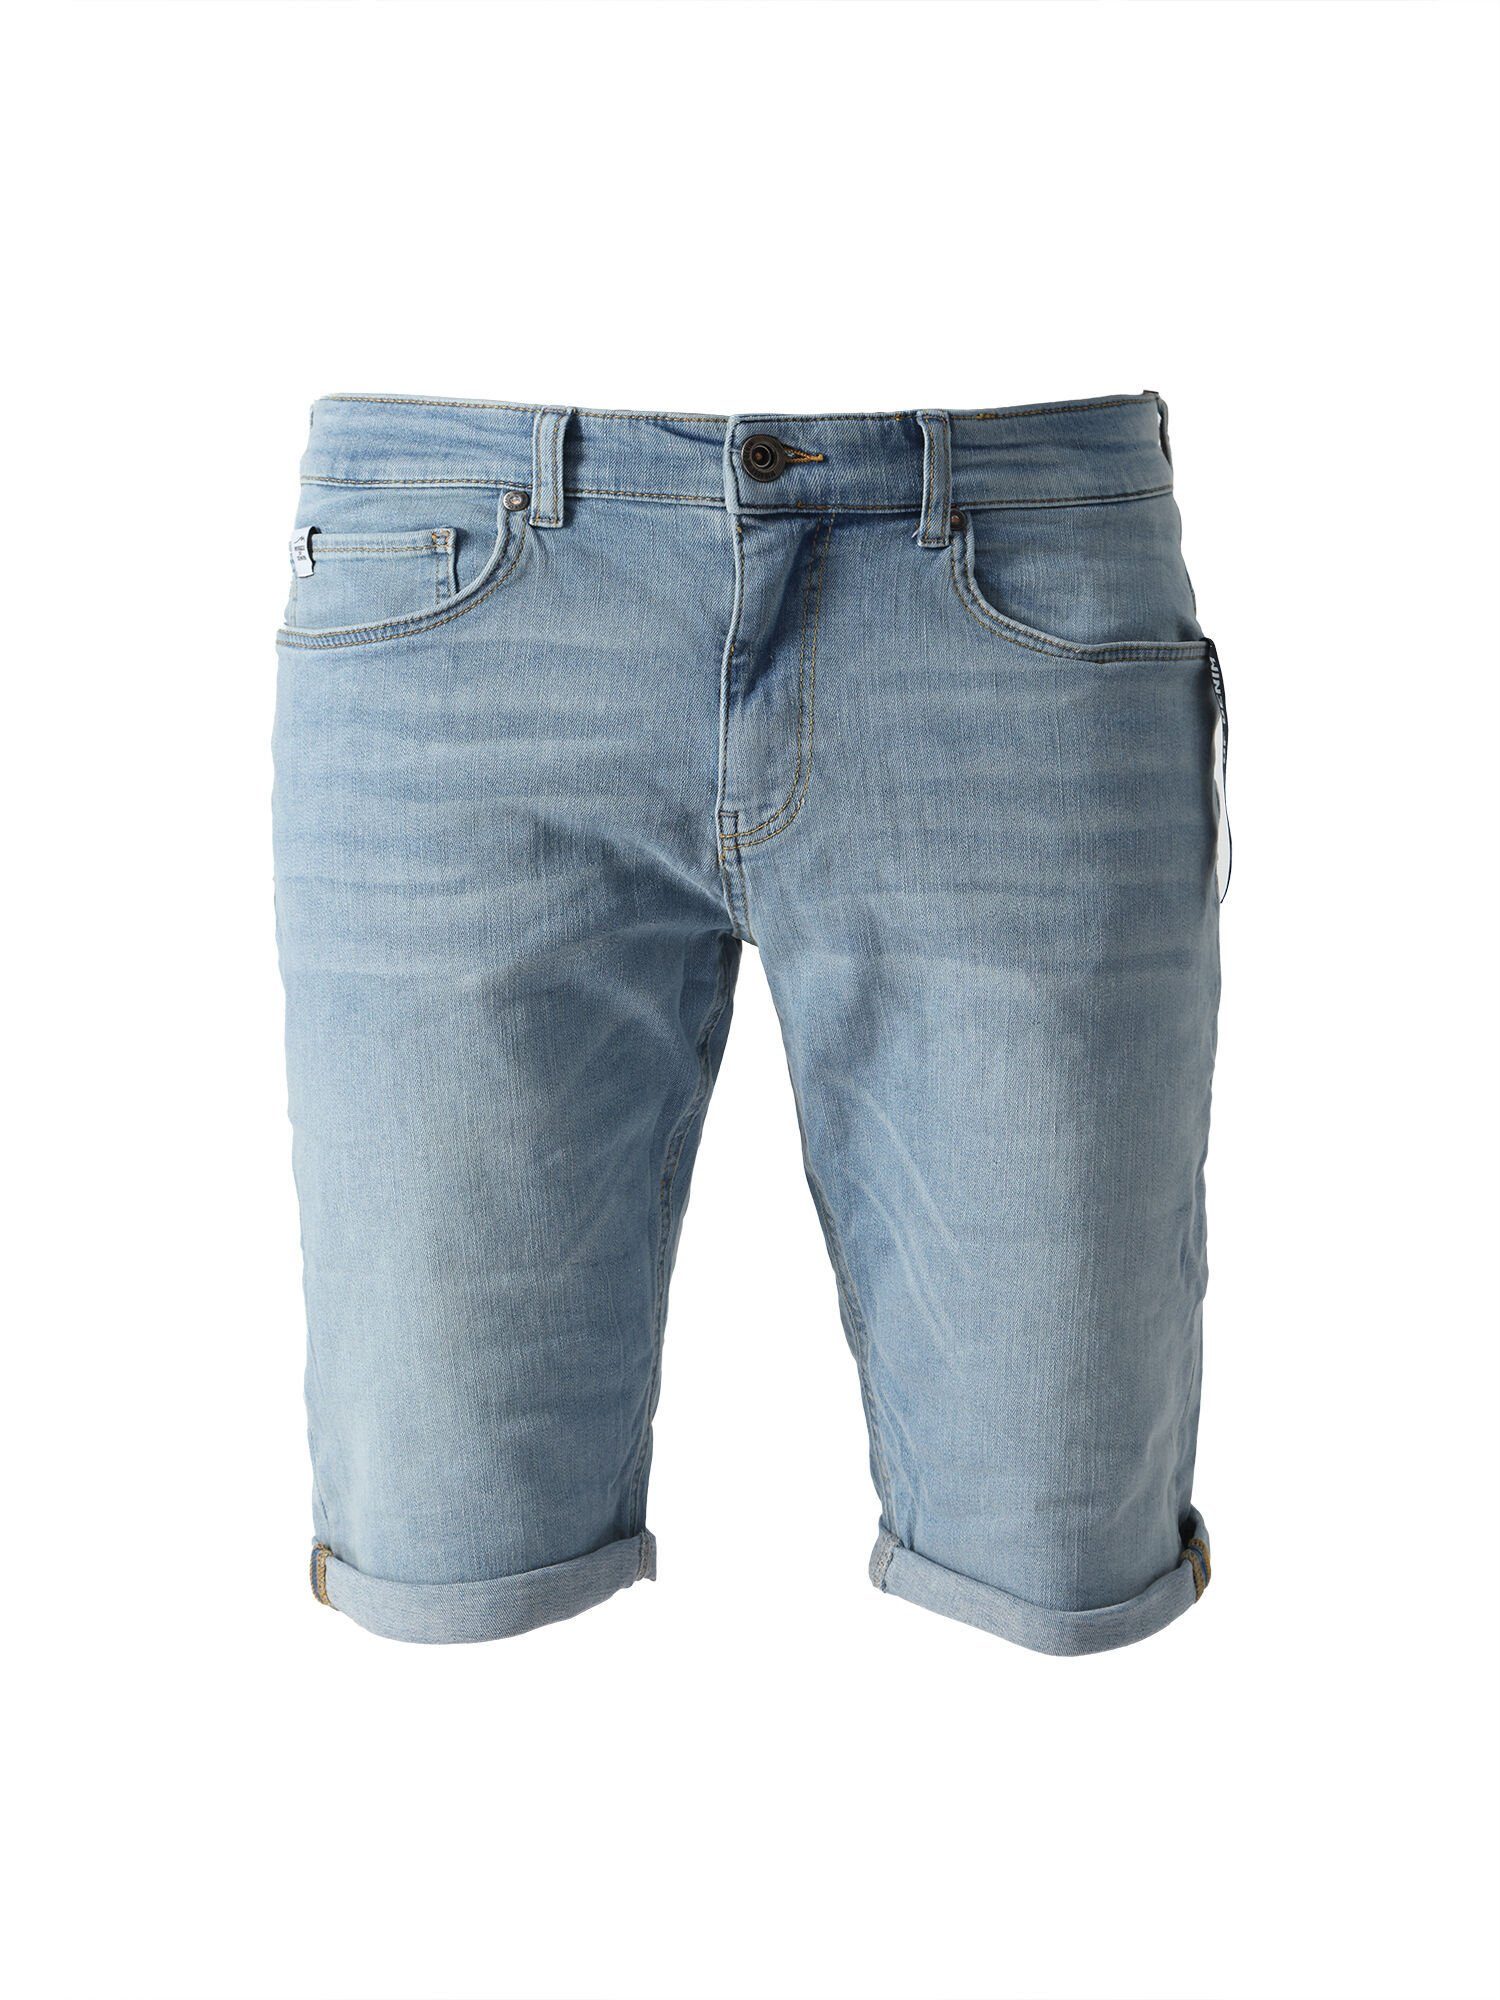 Paradise im of Style Miracle Shorts Blue Trevol Denim 5 Pocket Shorts